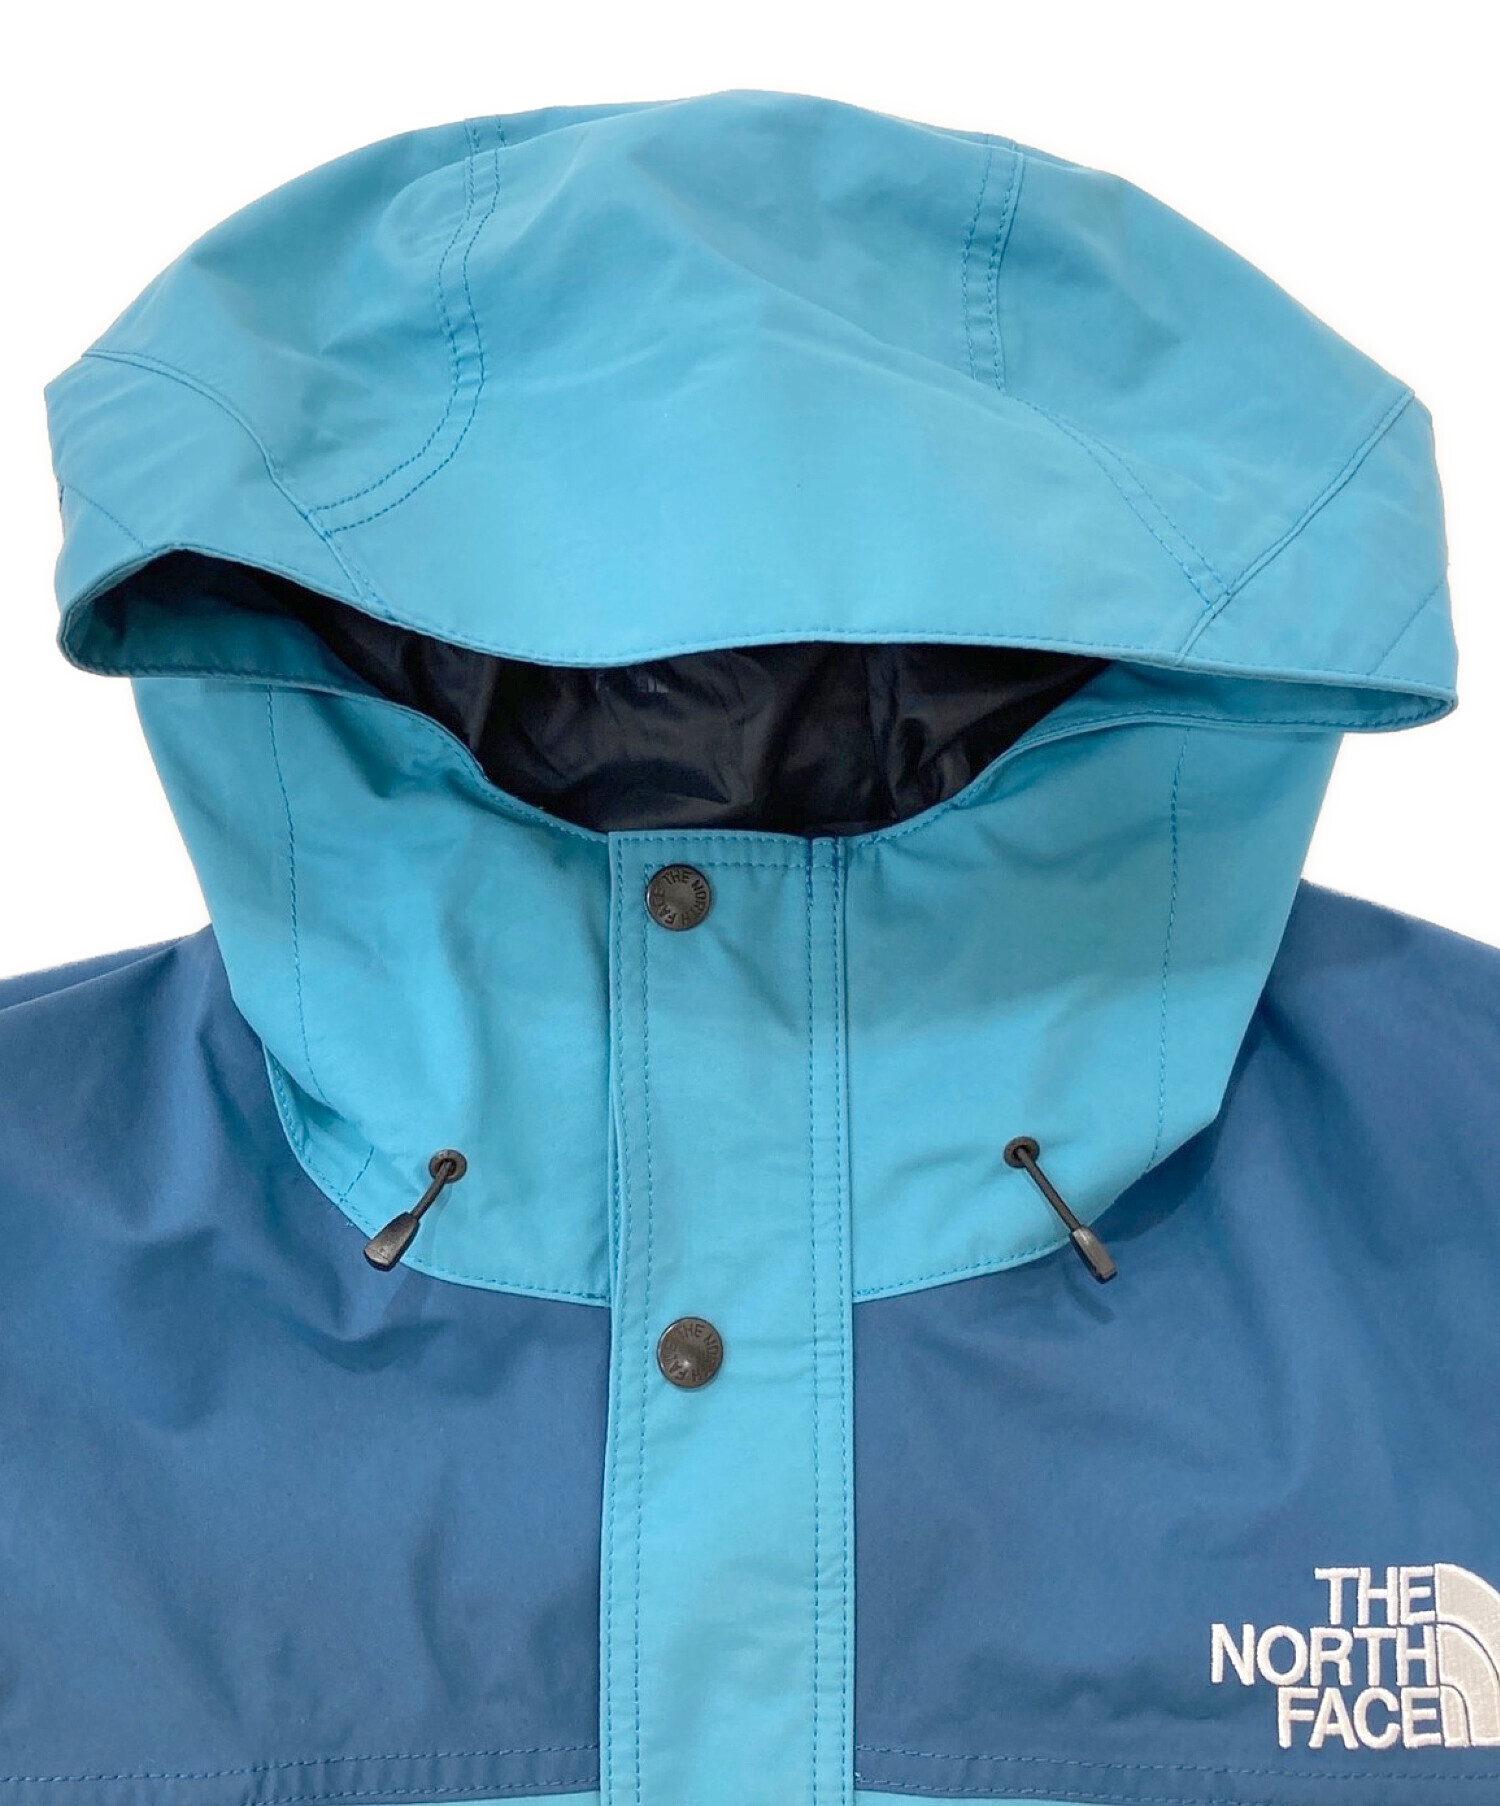 THE NORTH FACE (ザ ノース フェイス) Mountain Light Jacket モントレーブルー×ストームブルー サイズ:M  未使用品